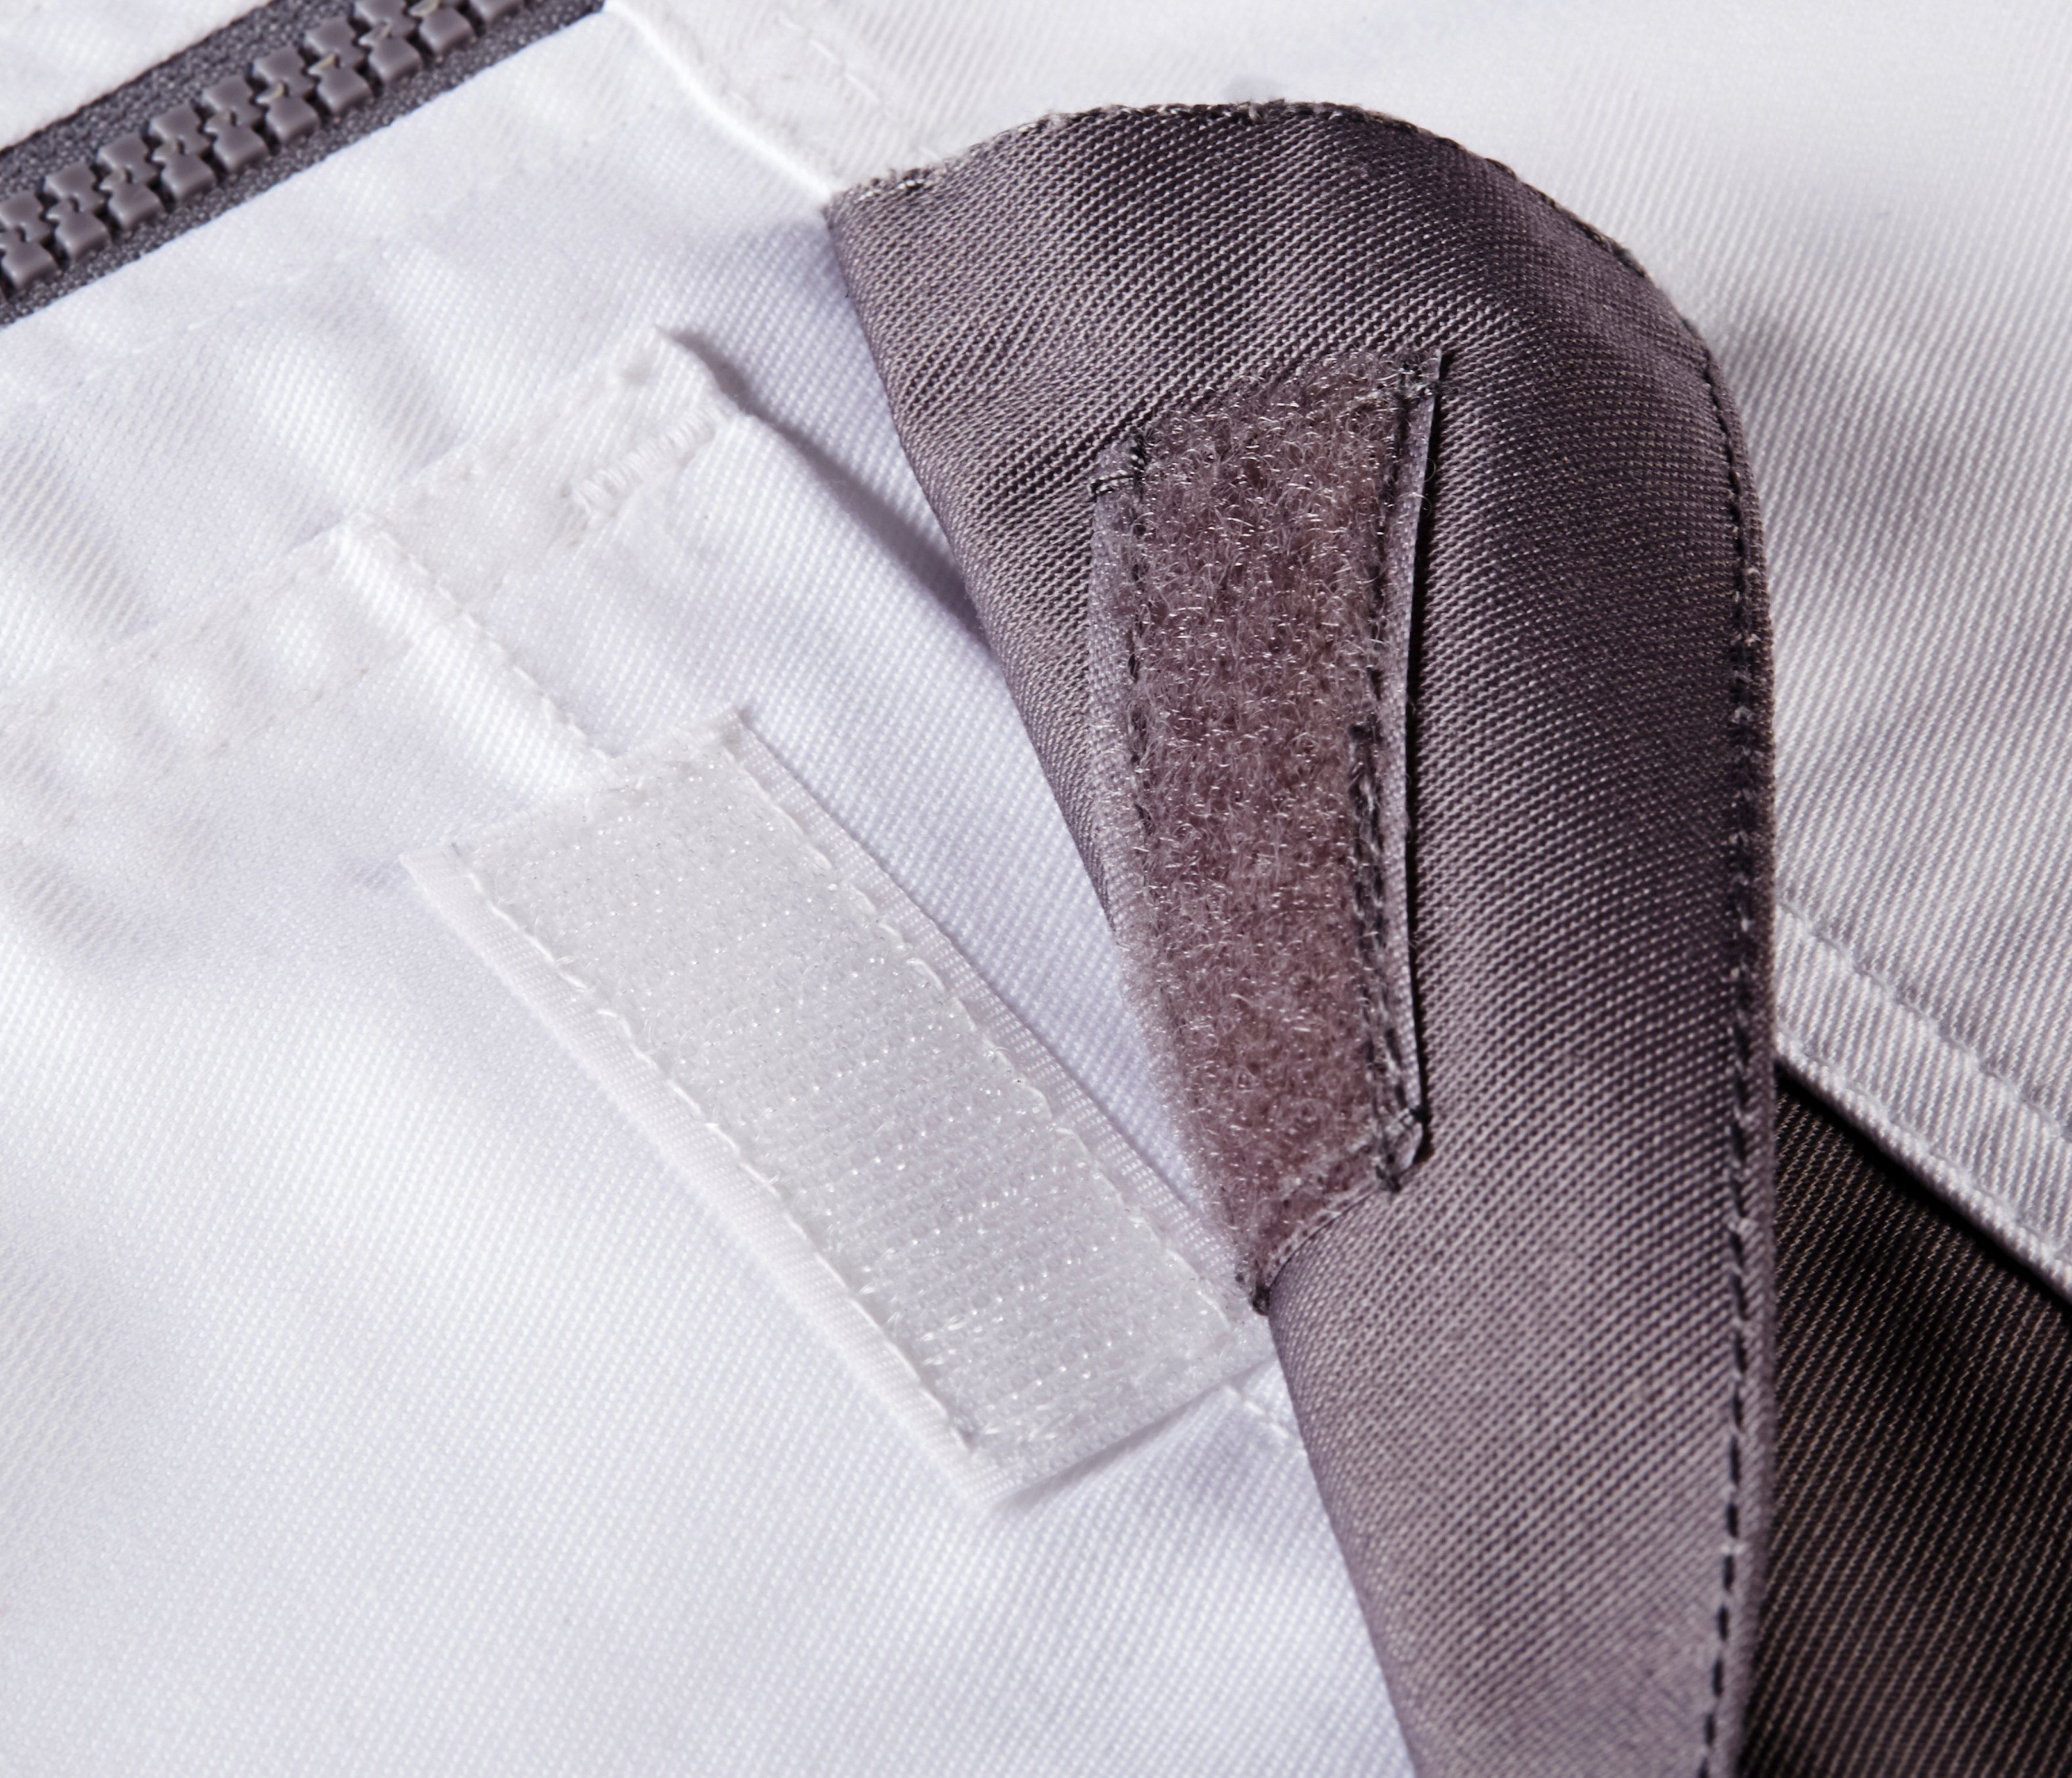 Taschen Extreme+ more safety& grau-weiß 6 Arbeitsjacke 2er-Set,